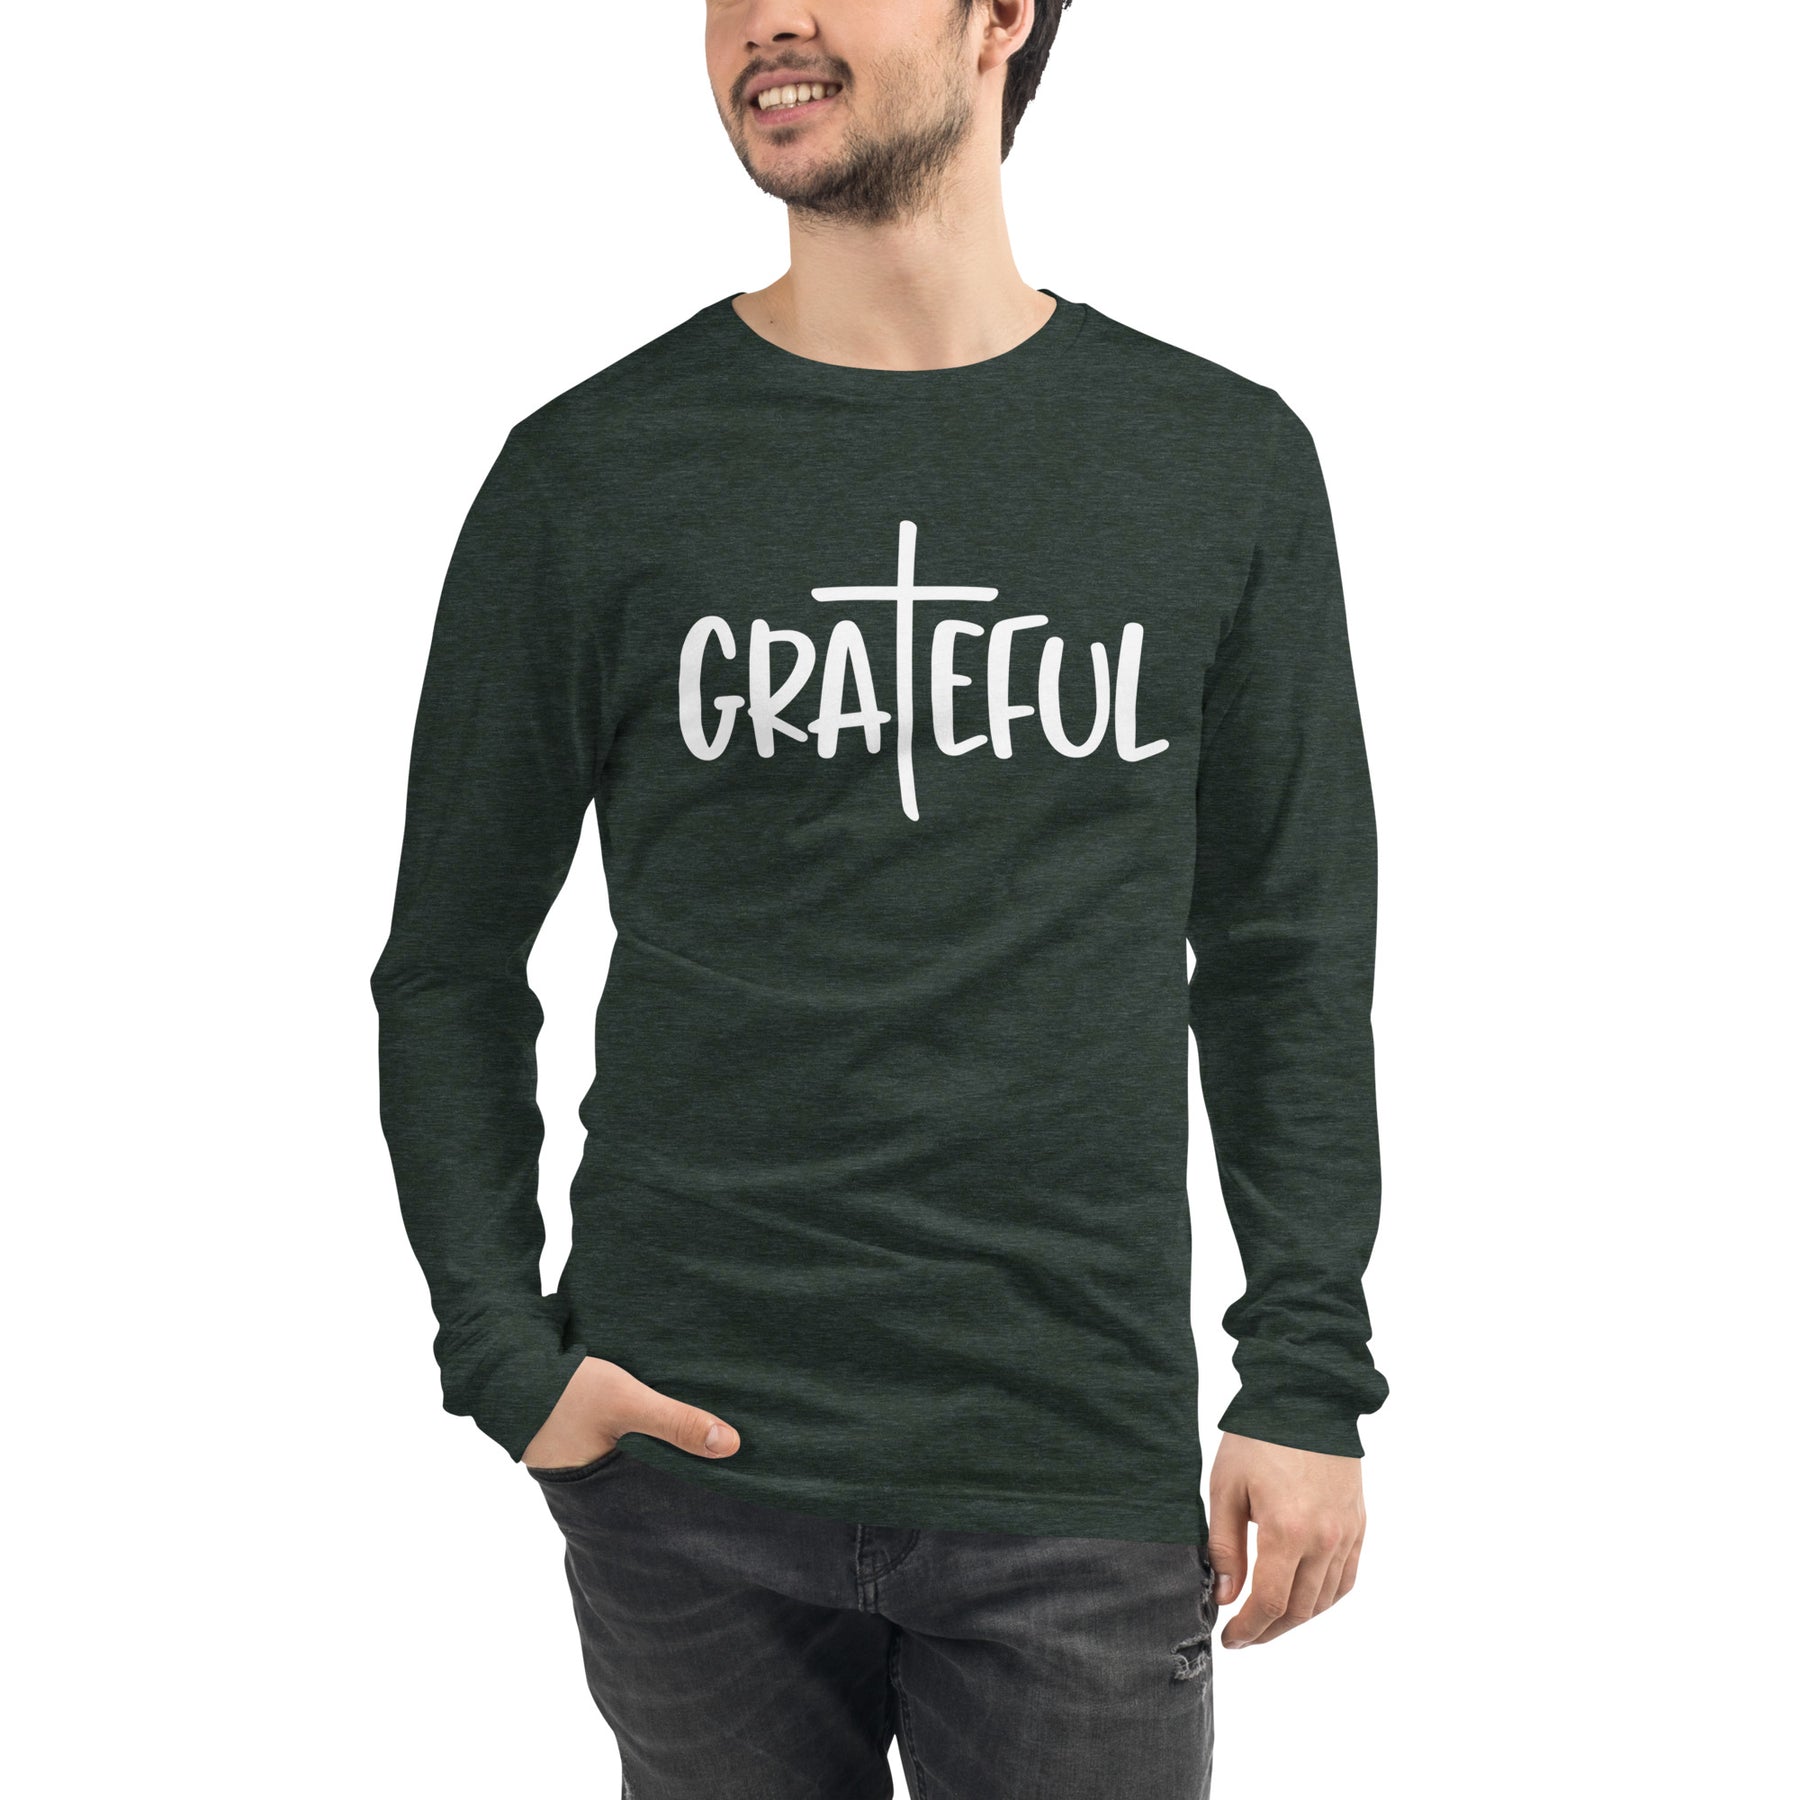 Grateful - Men's Long Sleeve T-Shirt